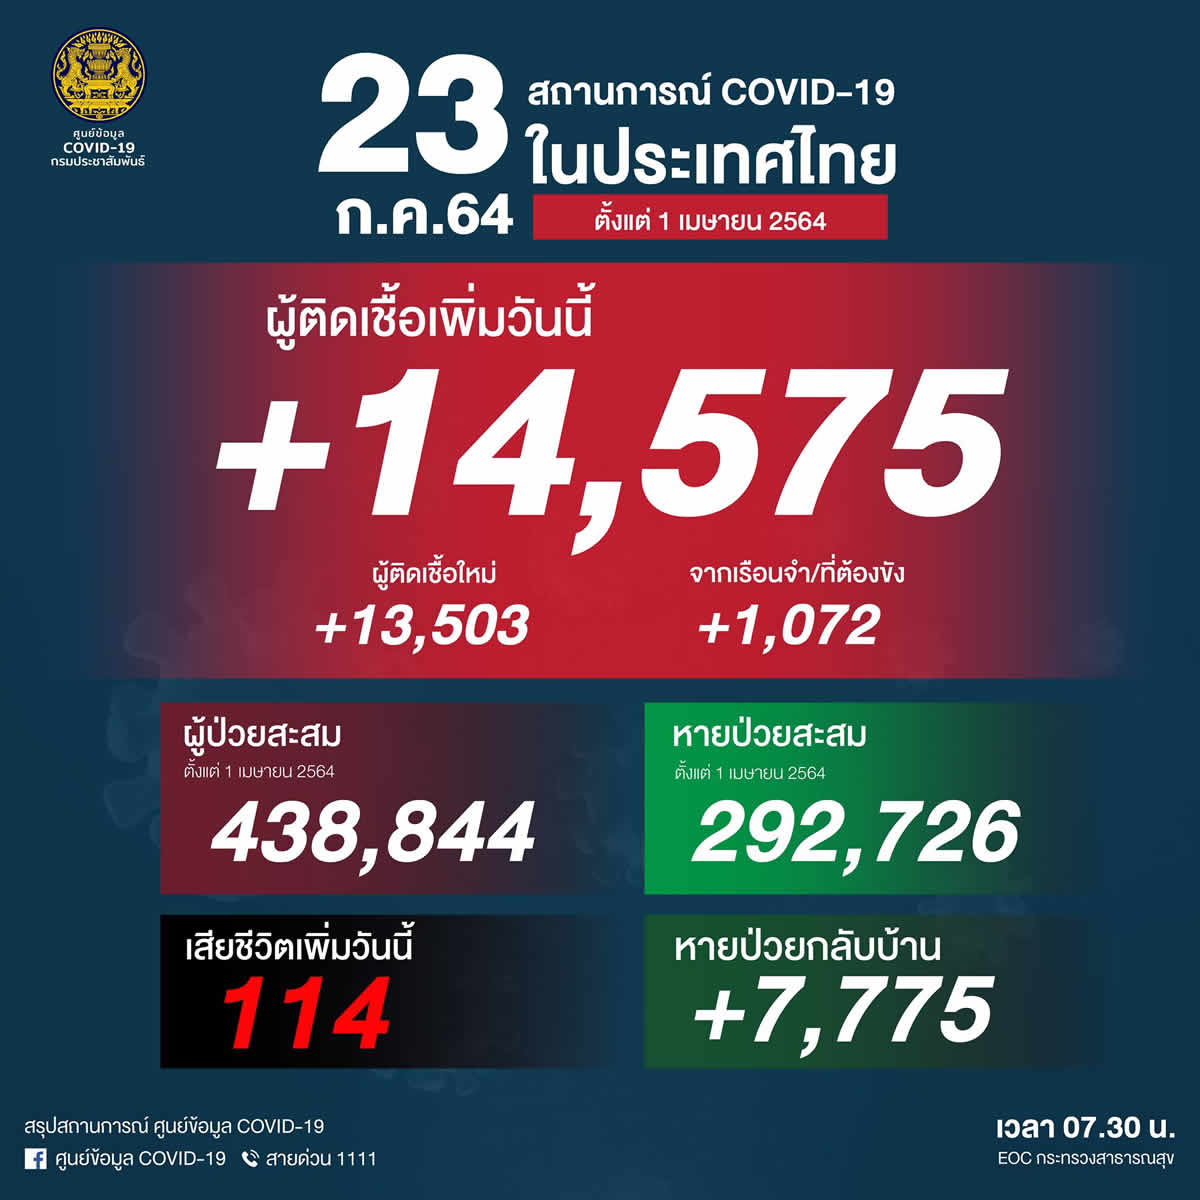 タイ14,575人陽性（刑務所1,072人）、114人死亡［2021/7/23］